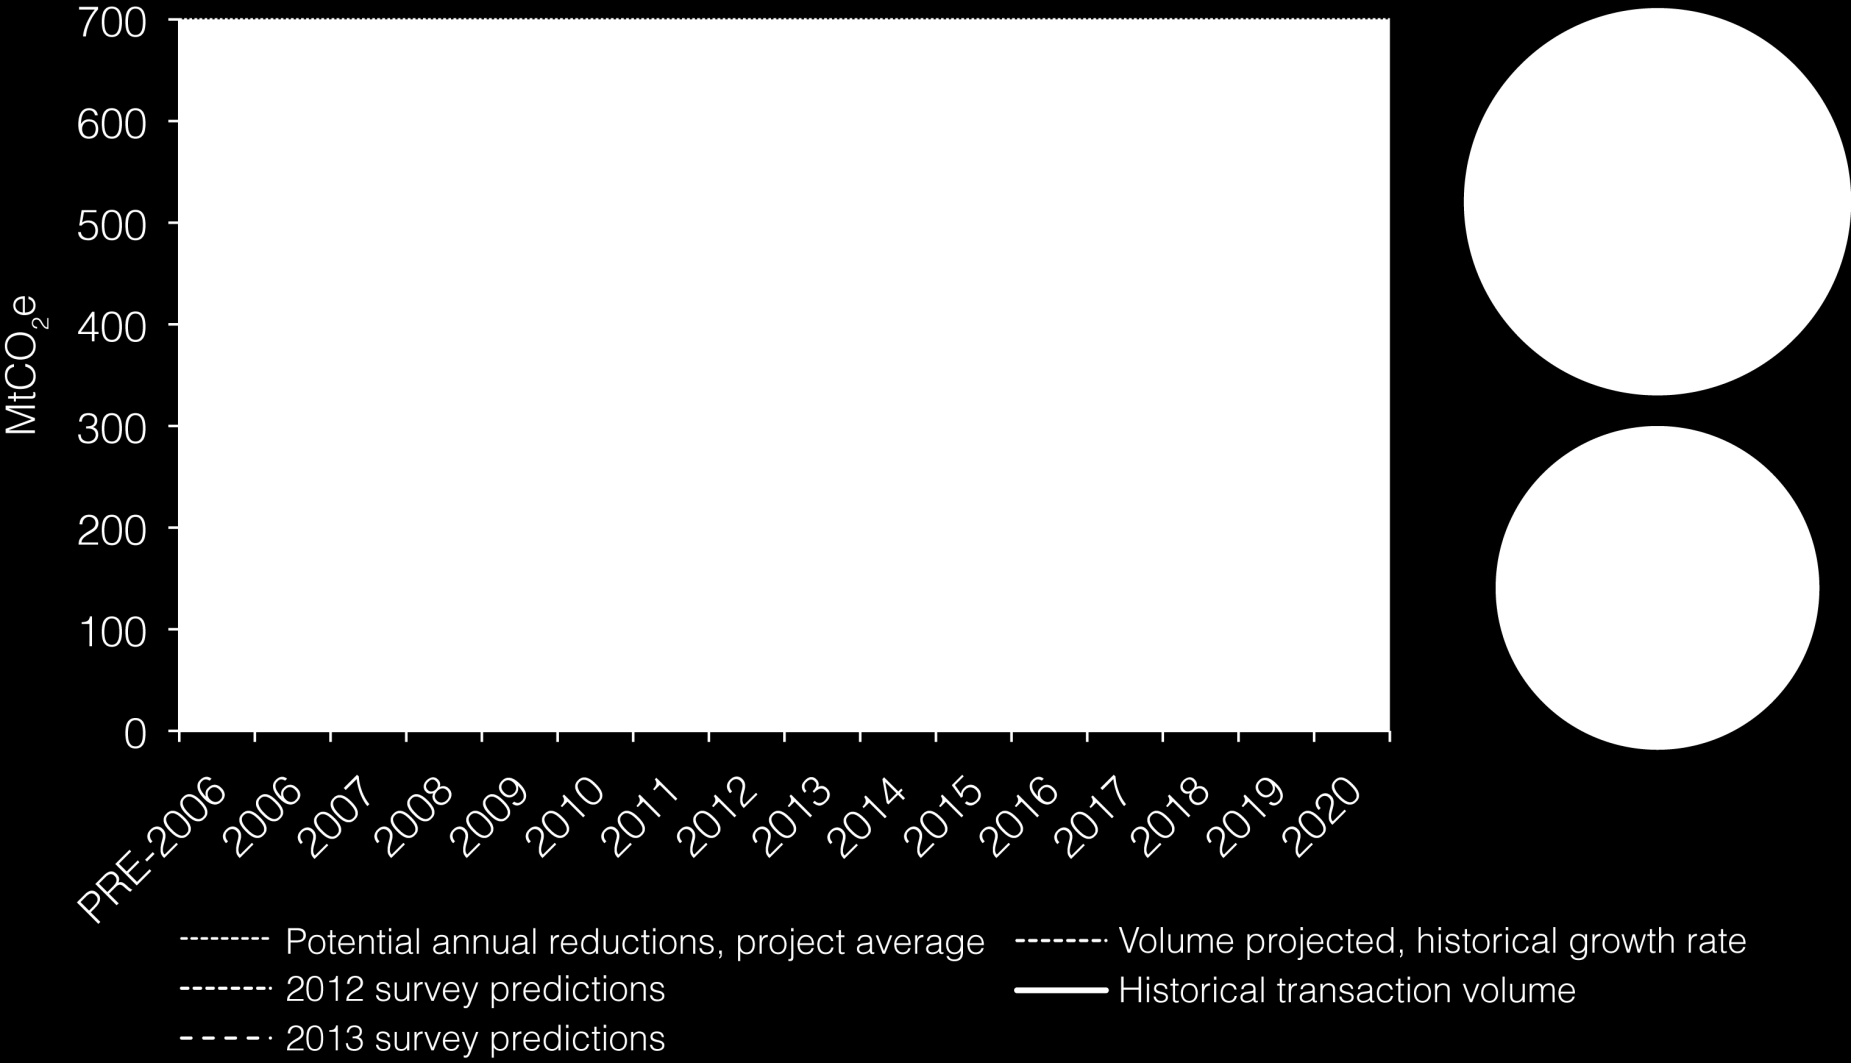 É esperado o crescimento do mercado voluntário de carbono, embora de forma modesta AS PROJEÇÕES DE MERCADO, DADOS HISTÓRICOS E PREVISÕES DE FORNECEDORES 2012 Previsões da pesquisa Notas: Baseados em